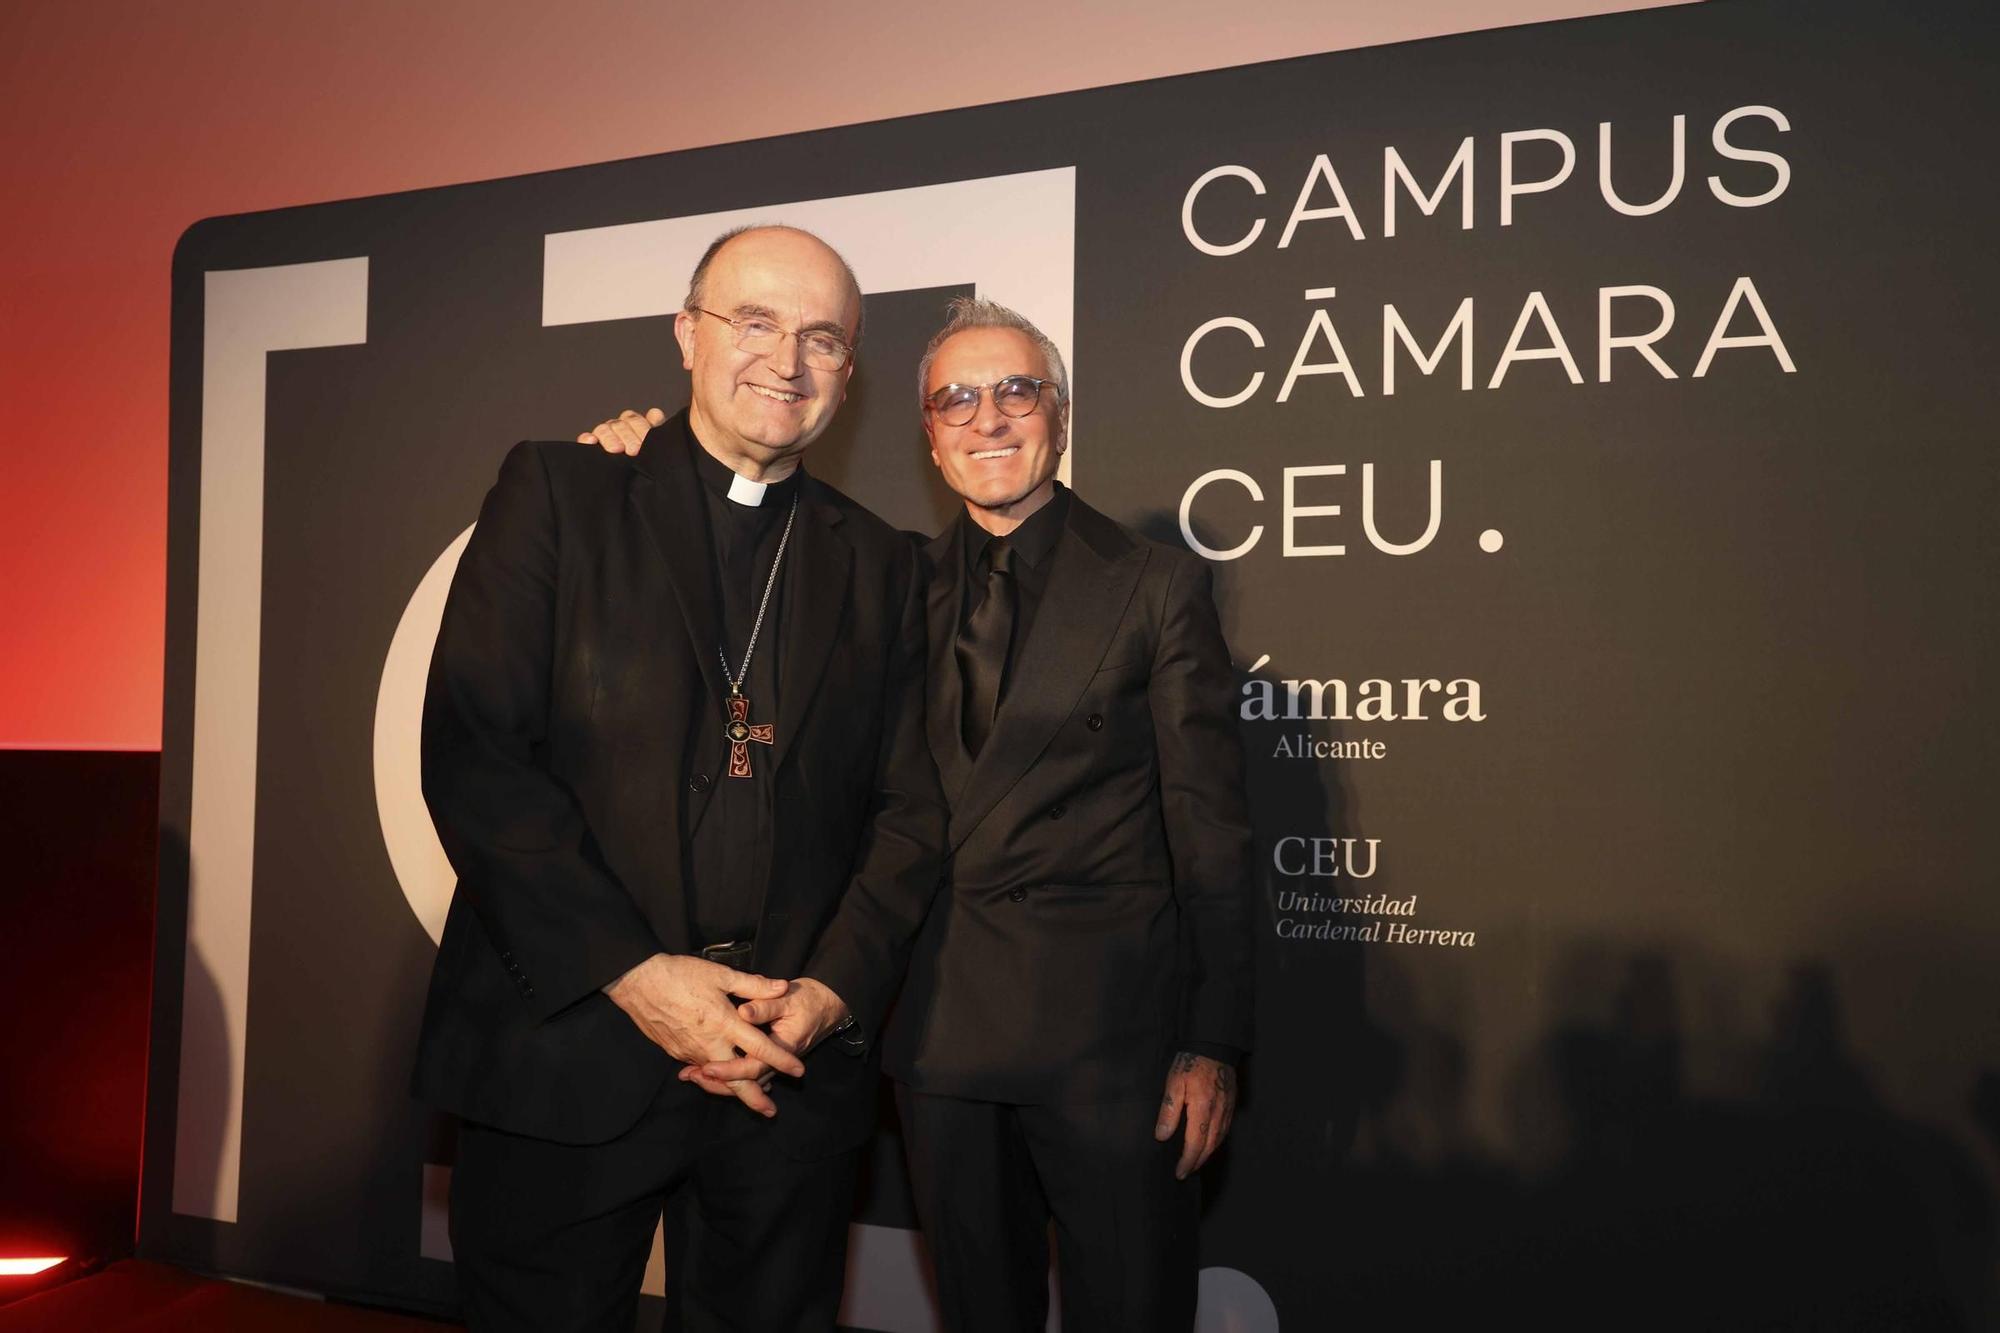 La Cámara de Alicante y la Universidad Cardenal Herrera CEU presentan el Campus Camara CEU, su proyecto formativo.